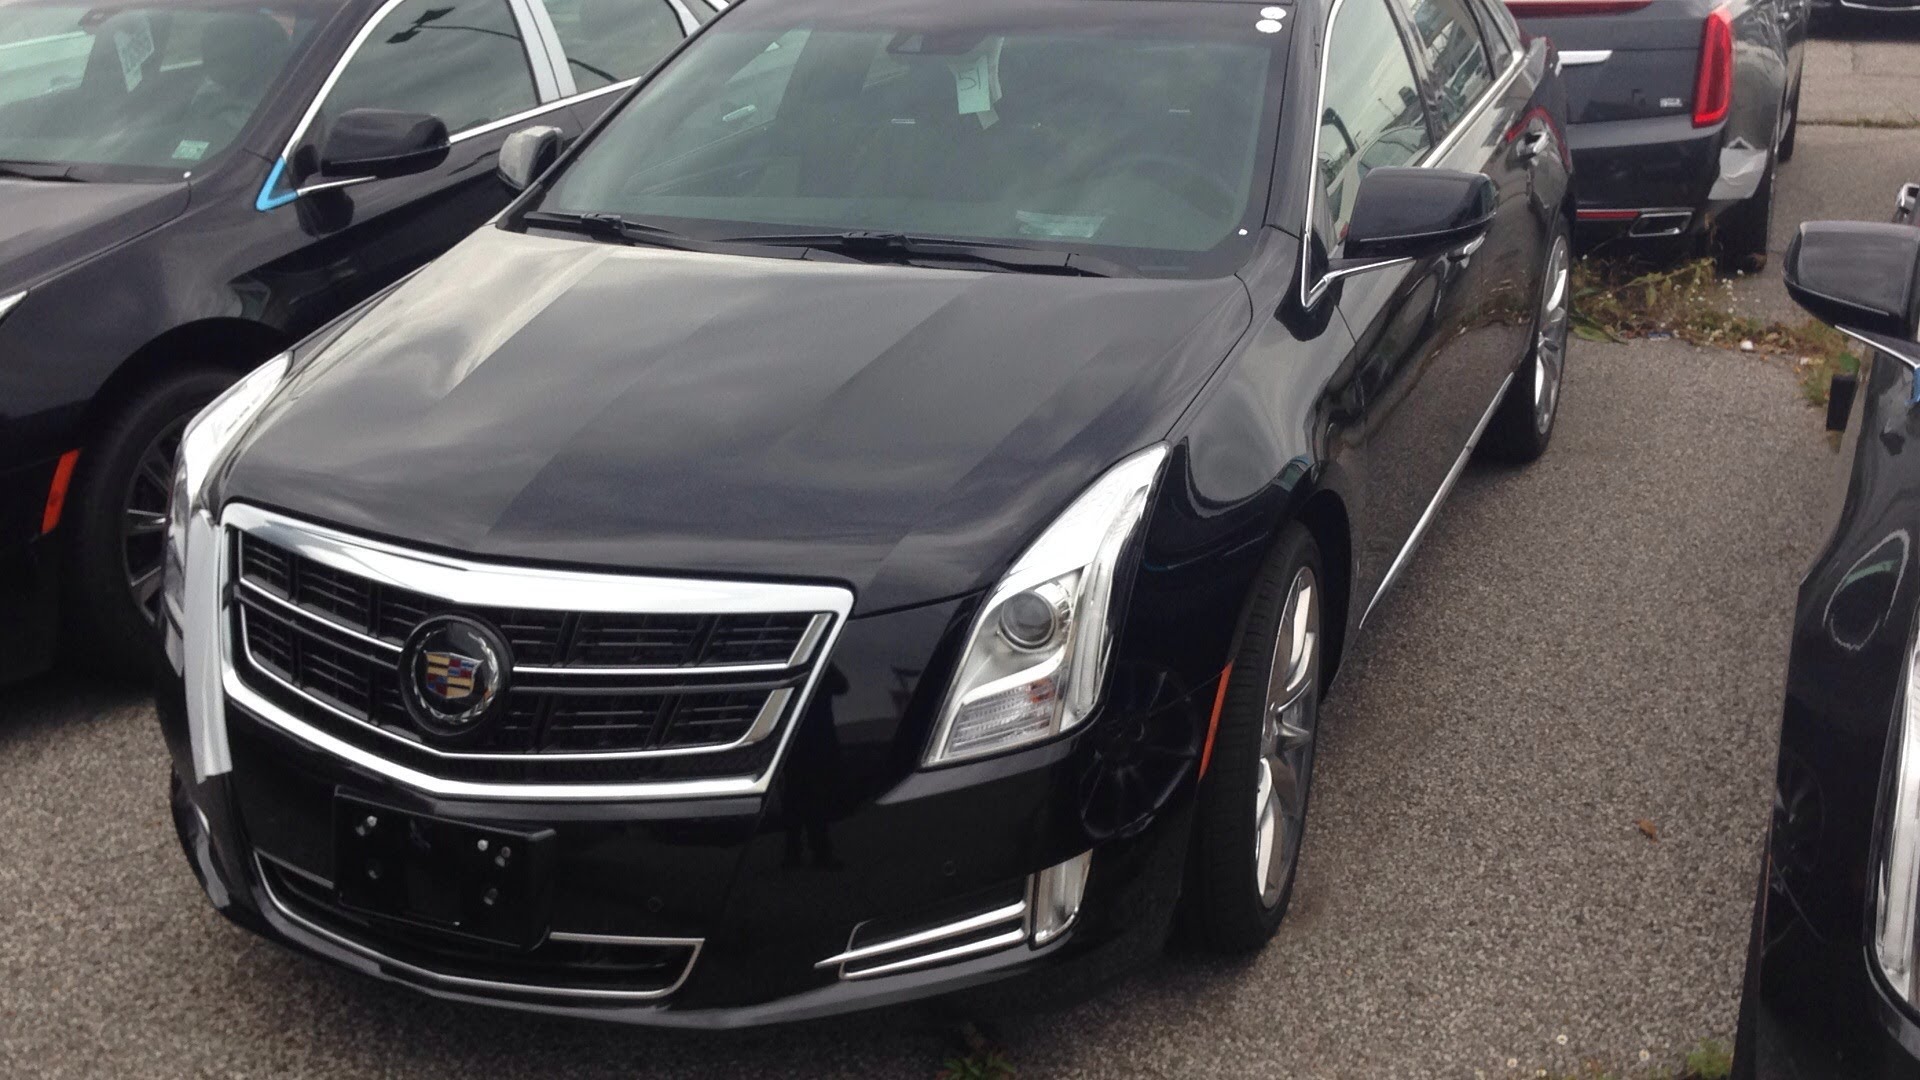 2014 Cadillac XTS Car Review Video Texas